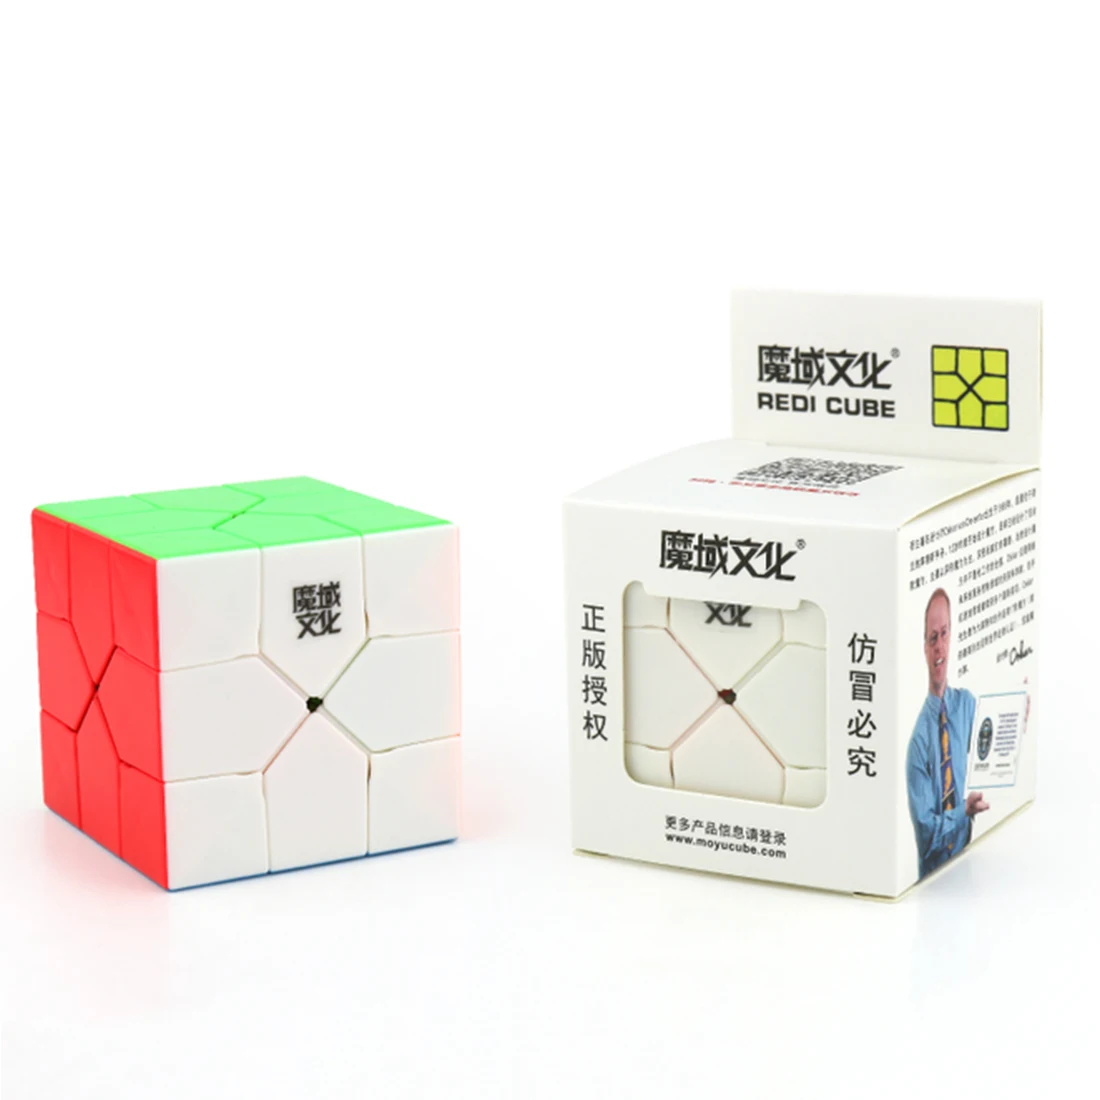 MoYu YJ8253 реди куб профессиональный дизайн аномалия 3x3 волшебный куб пазл игрушки для сложных-окрашенных